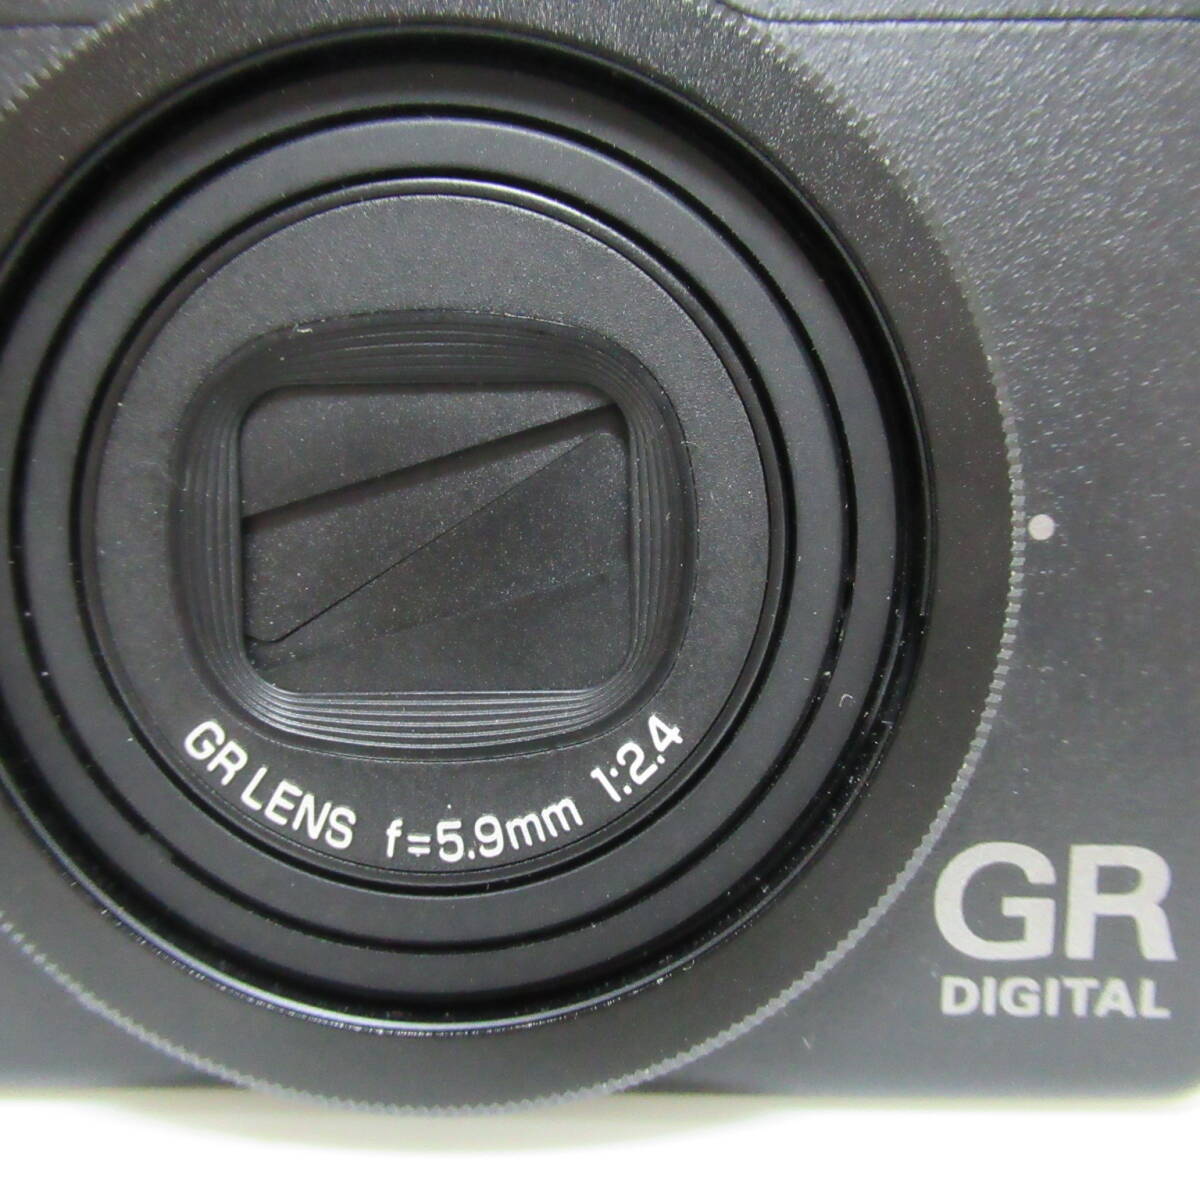 デジタルカメラ リコー RICOH GR RENS f=5.9mm 1:2.4 バッテリー 通電確認済 光学機器 60サイズ発送 p-2625827-208-mrrzの画像3